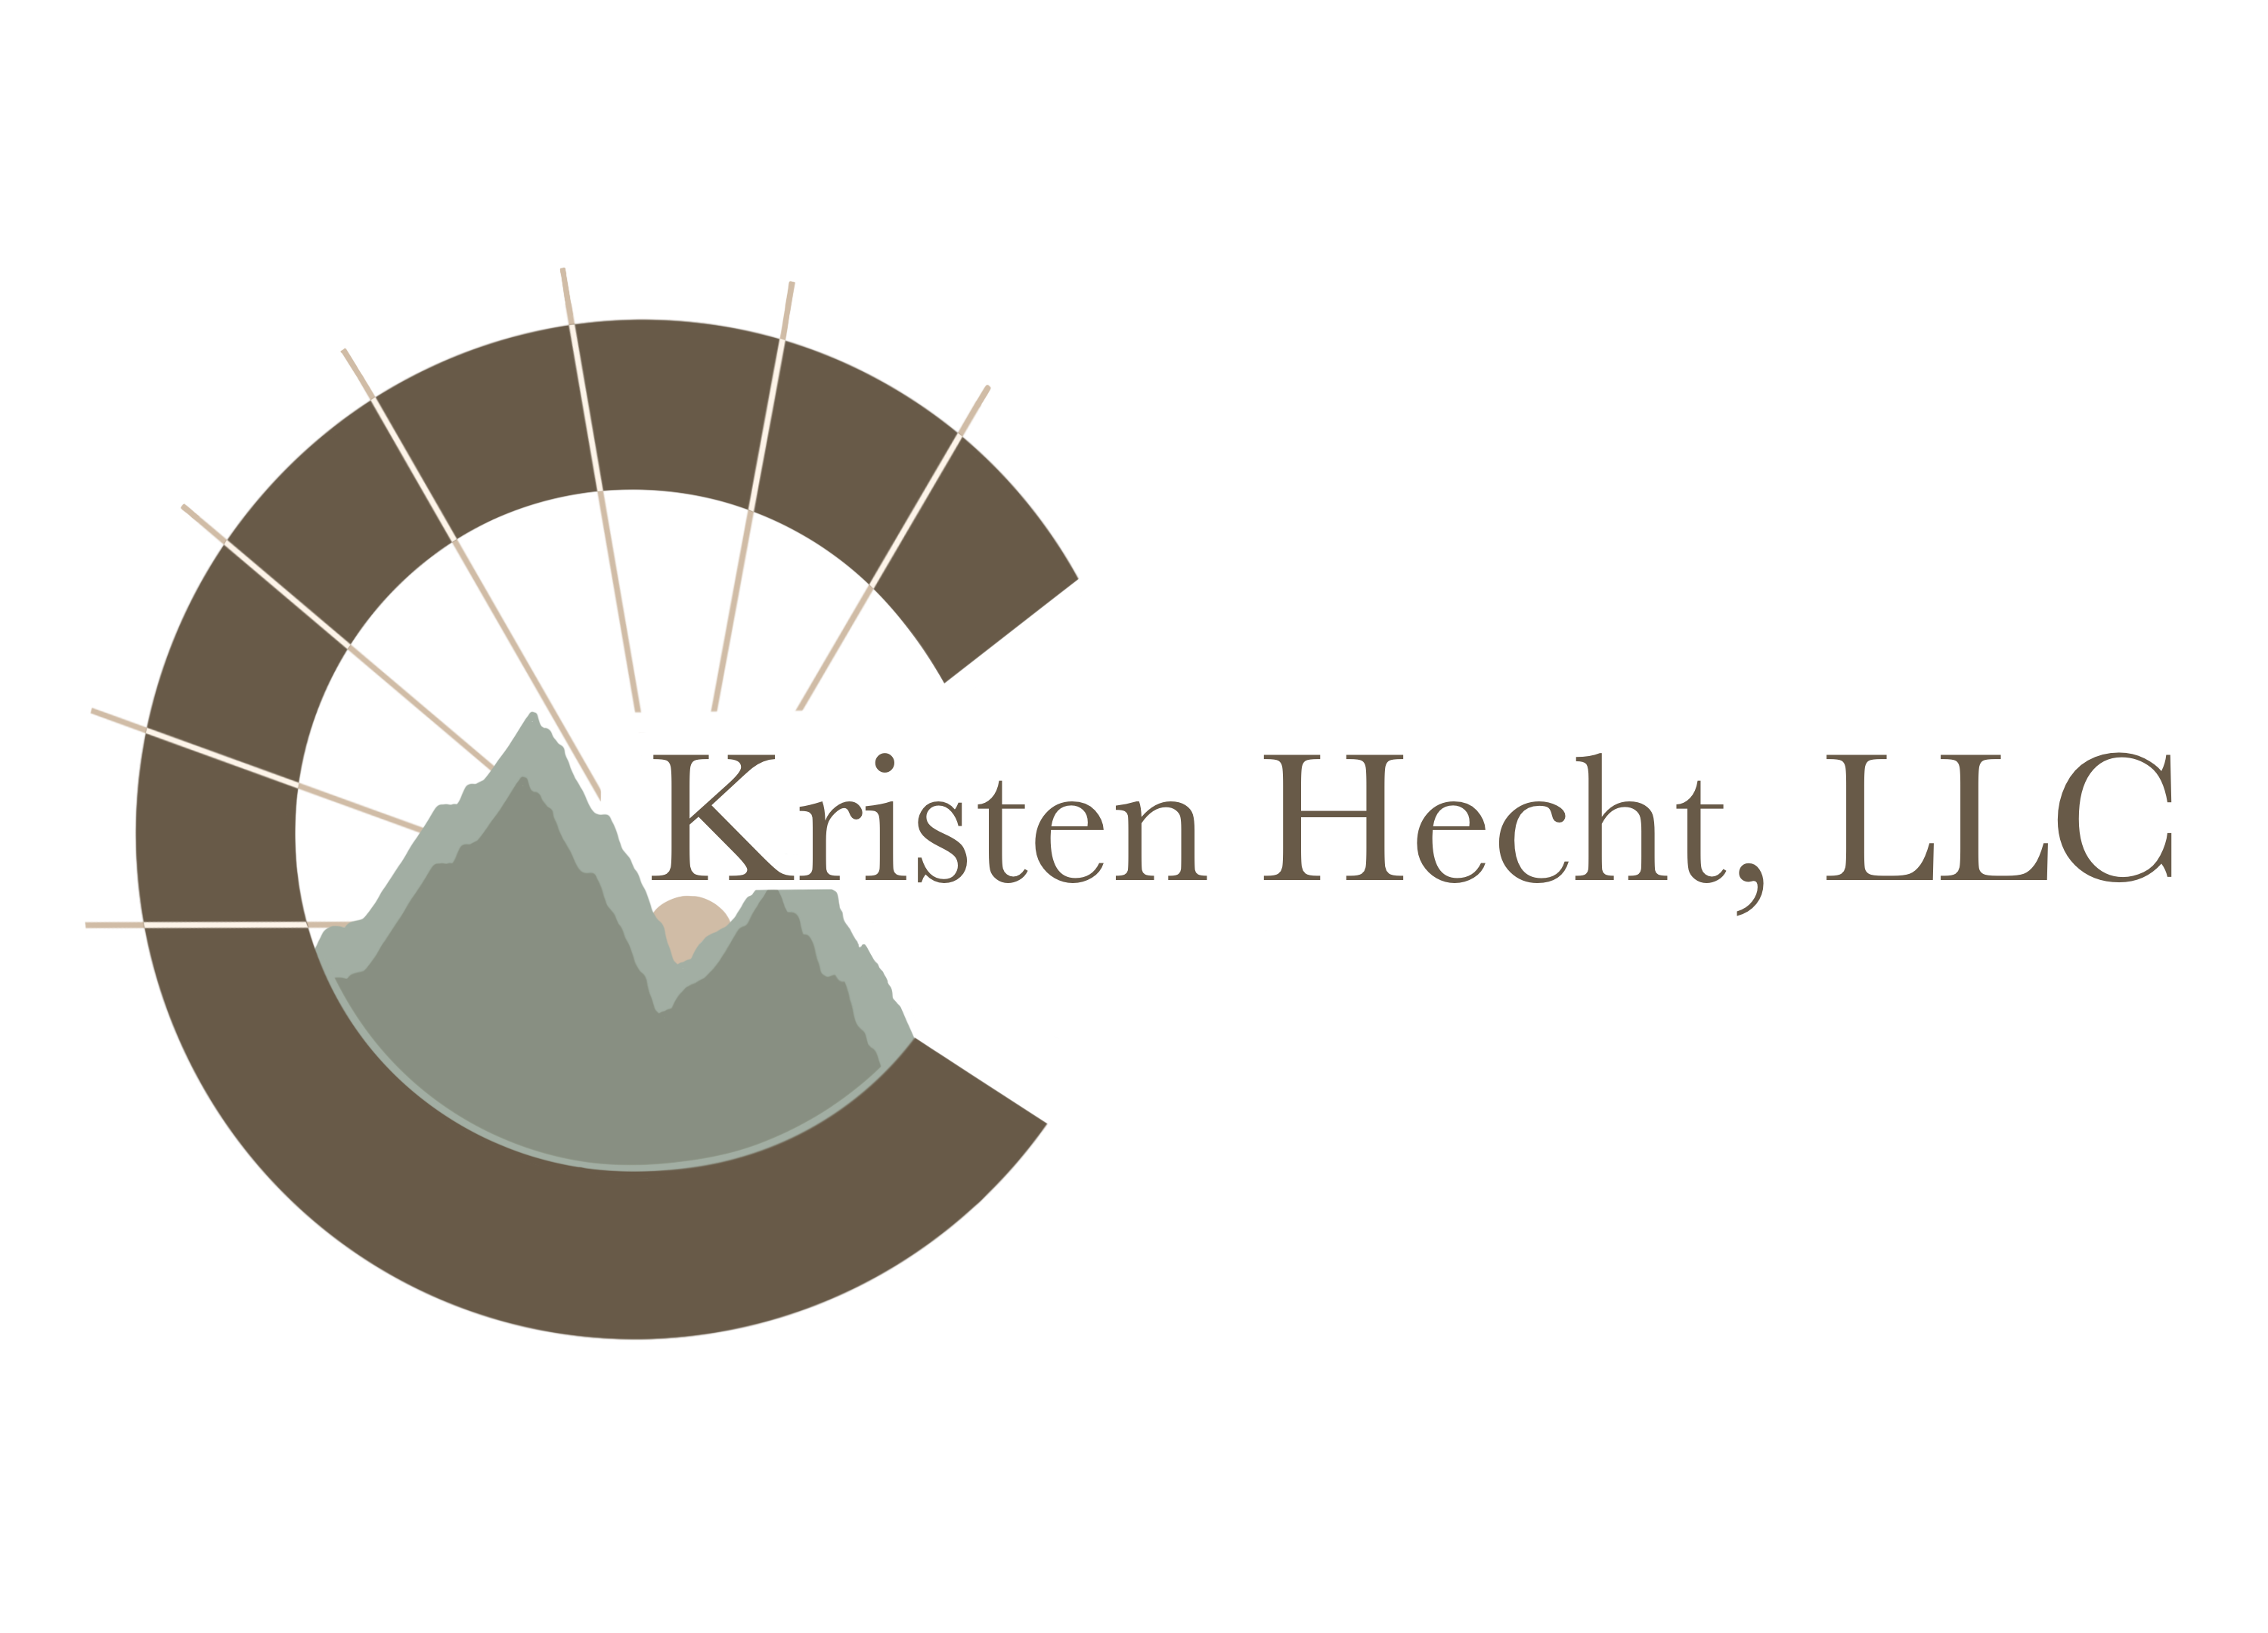 Kristen Hecht LLC